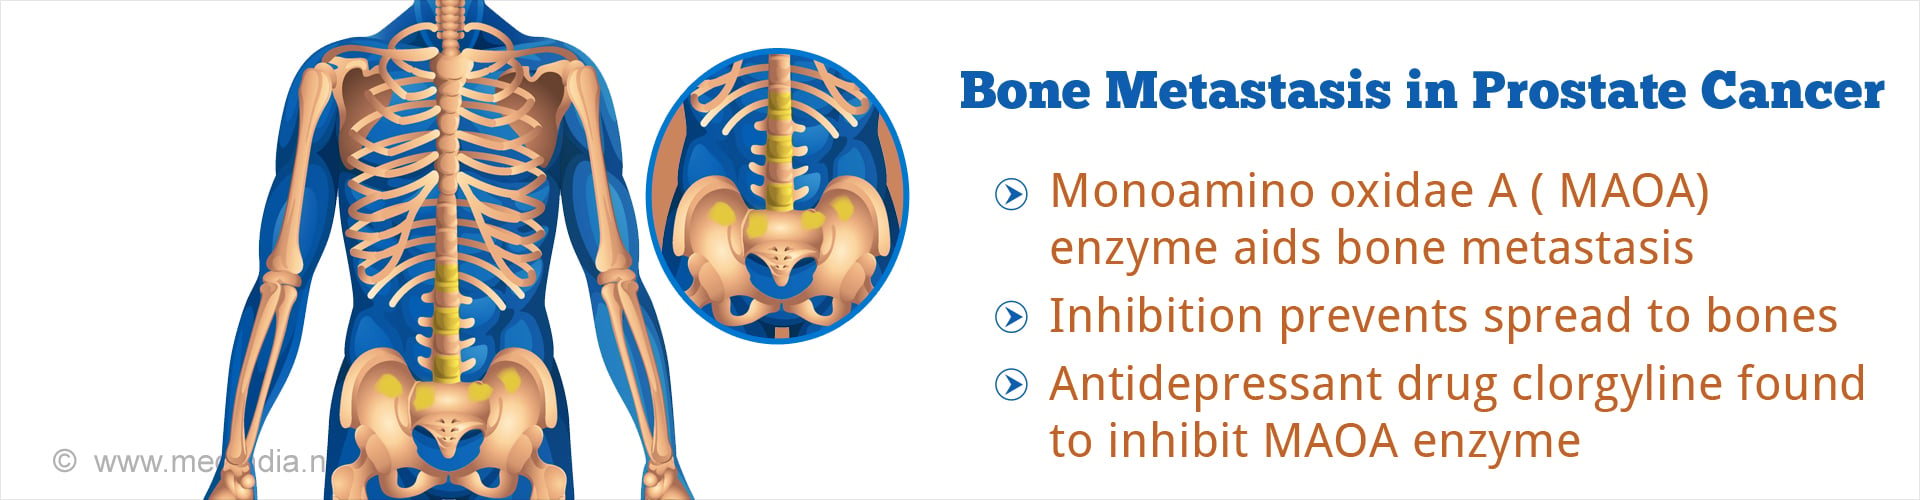 Bone metastasis in prostate cancer
- Monoamino oxidate A (MAOA) enzyme aids bone metastasis
- Inhibition prevents spread to bones
- Antidepressant drug clorgyline found to inhibit MAOA enzyme